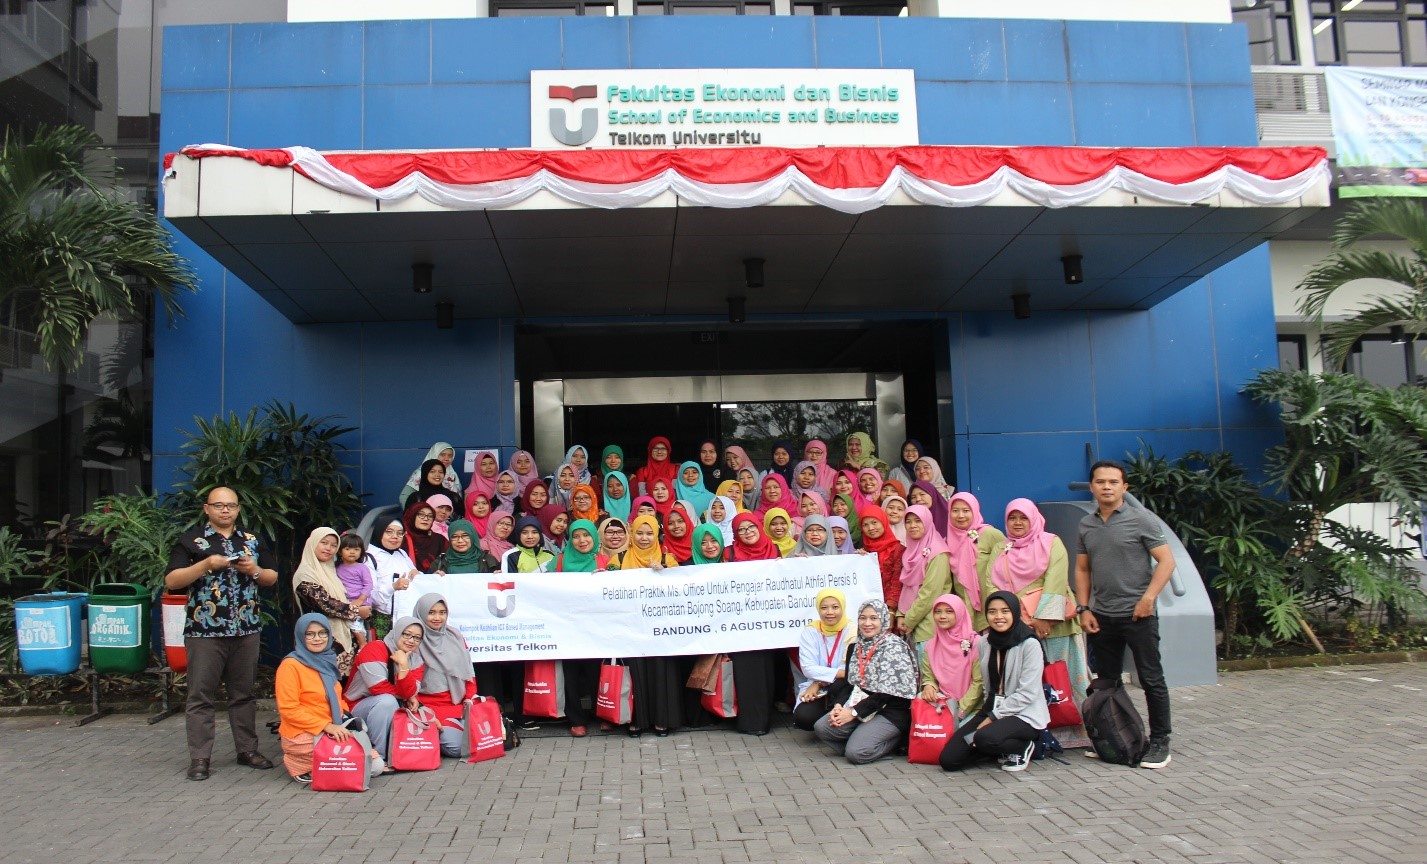 Pelatihan Teori & Praktik Komputer Untuk Ikatan Guru Raudhatul Athfal (IGRA), Kecamatan Bojong Soang, Kabupaten Bandung